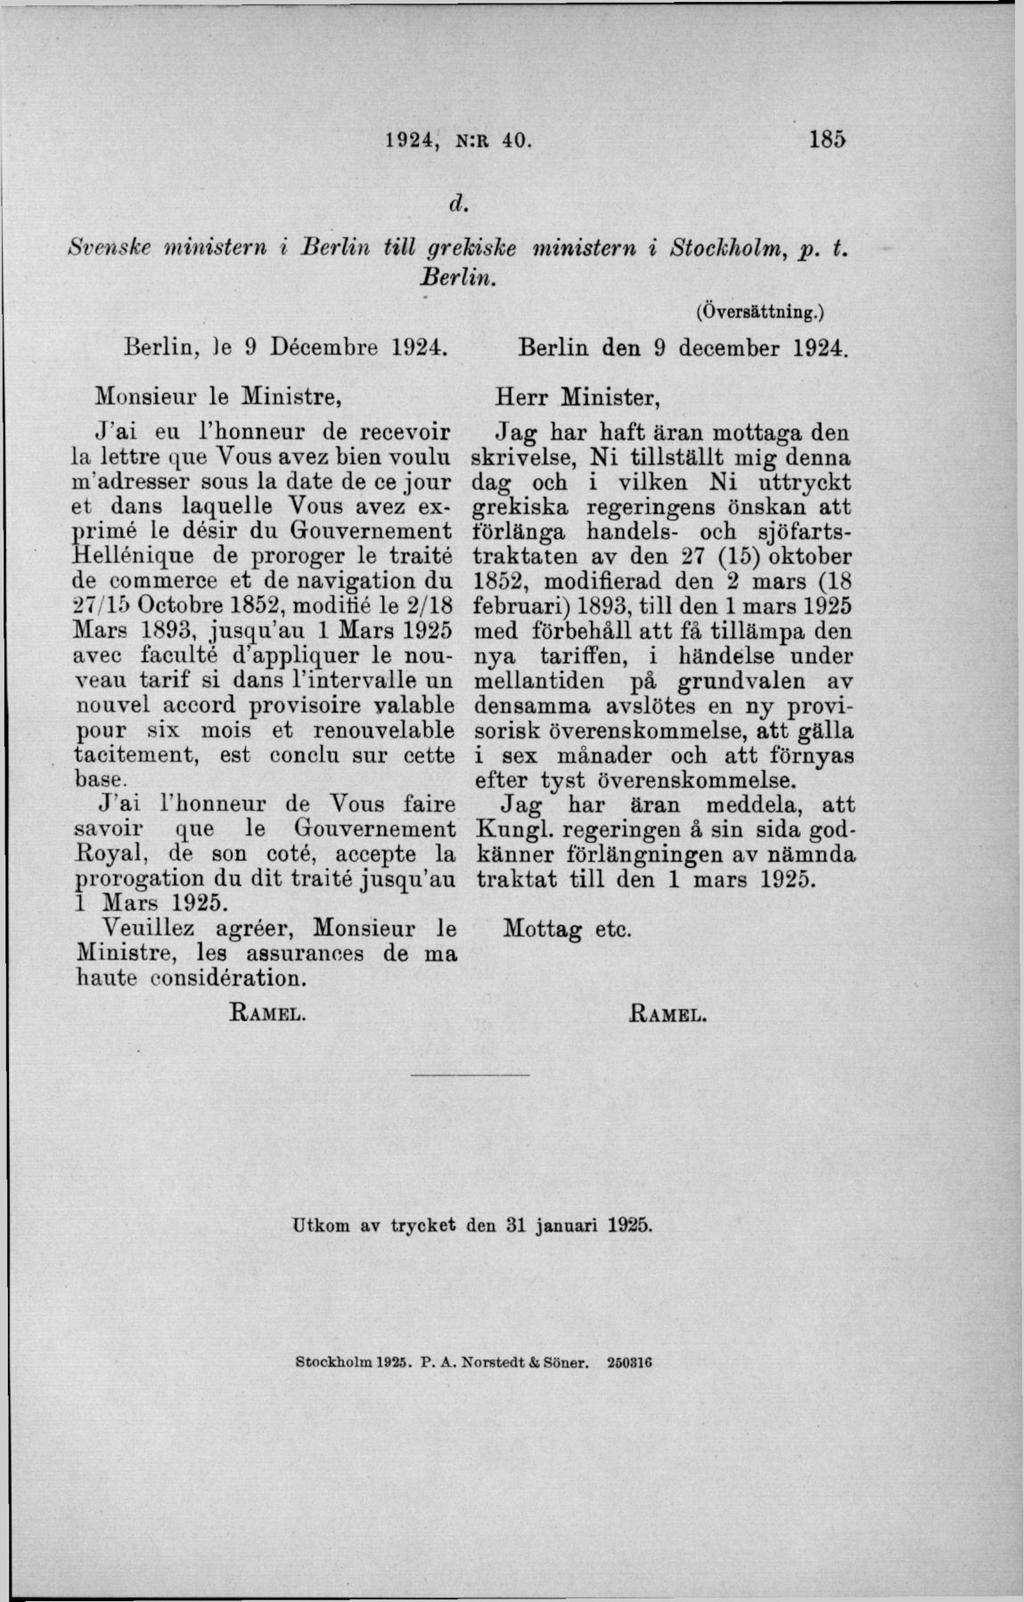 d. Svenske m inistern i B erlin till grekiske m inistern i Stockholm, p. t. Berlin. Berlin, )e 9 Décembre 1924.